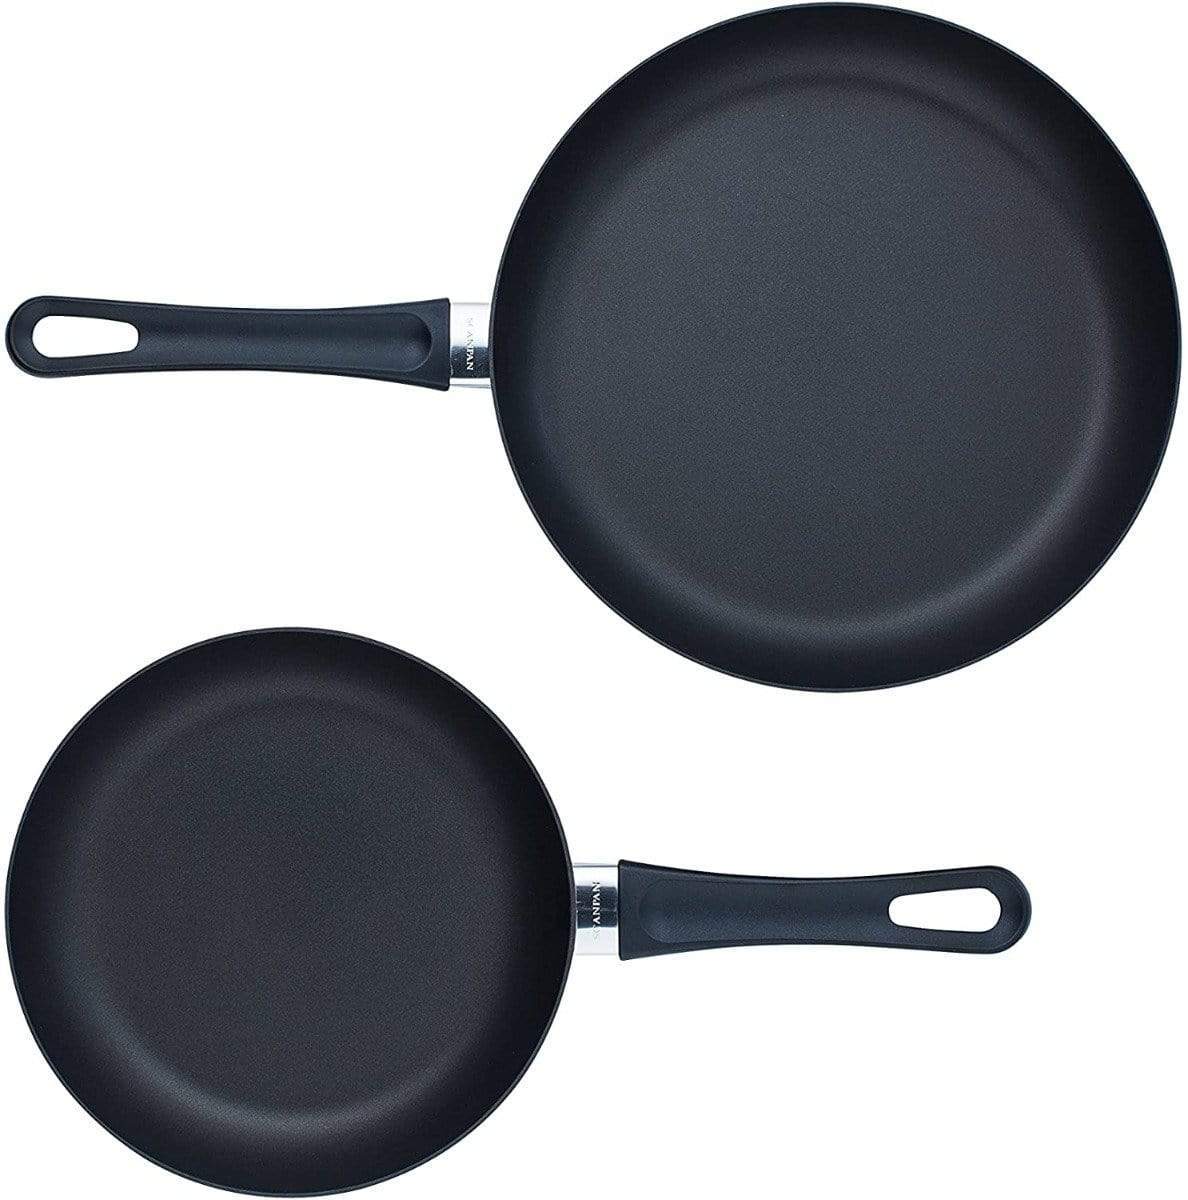 Scanpan USA Fry Pans & Skillets Scanpan Classic 8 & 10 1/4 inch Fry Pan Set